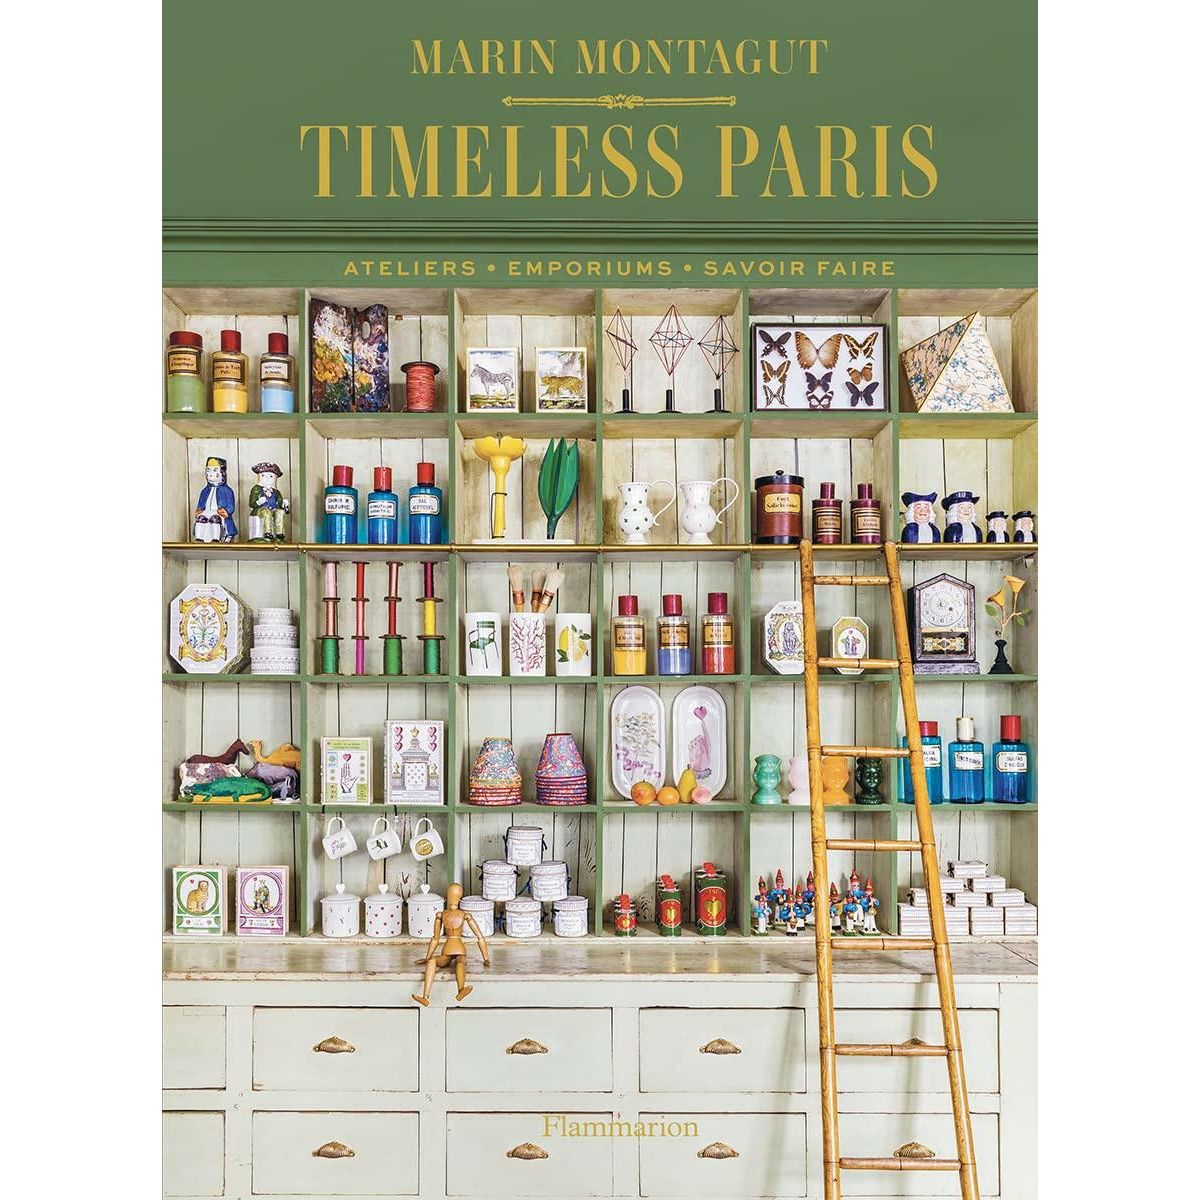 Timeless Paris: Ateliers Emporiums Savoir Faire - The European Gift Store